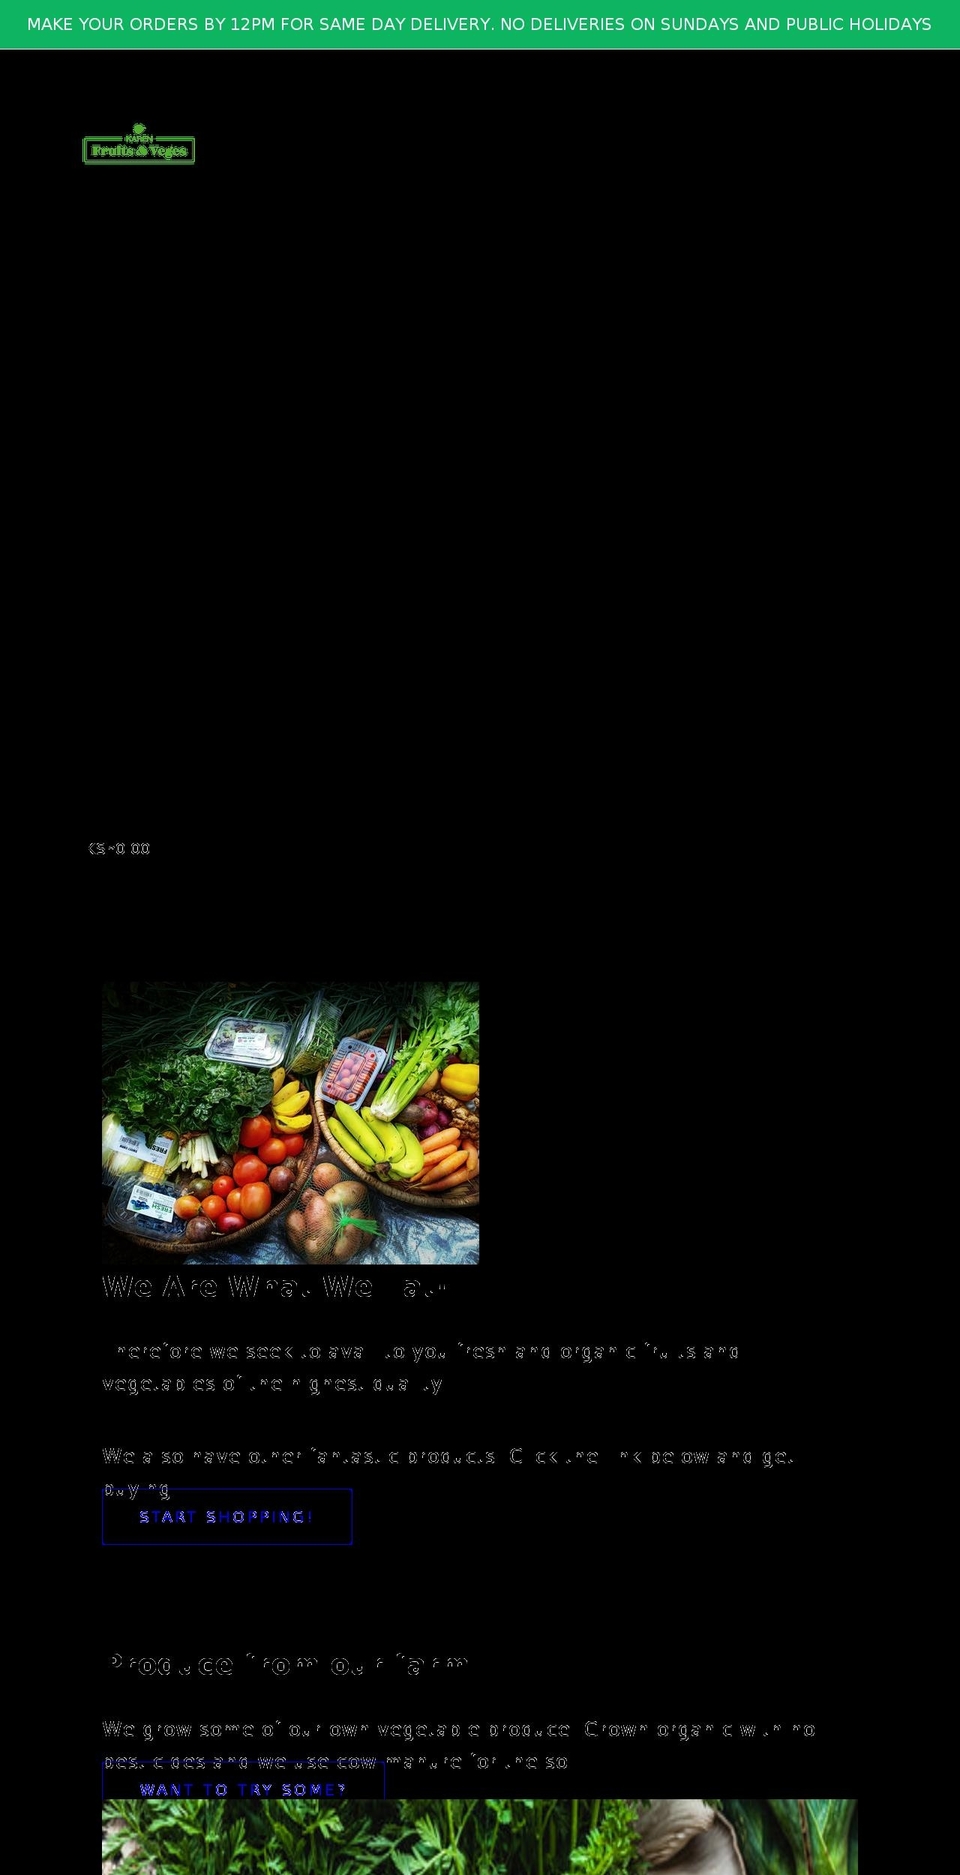 karenfruits.com shopify website screenshot